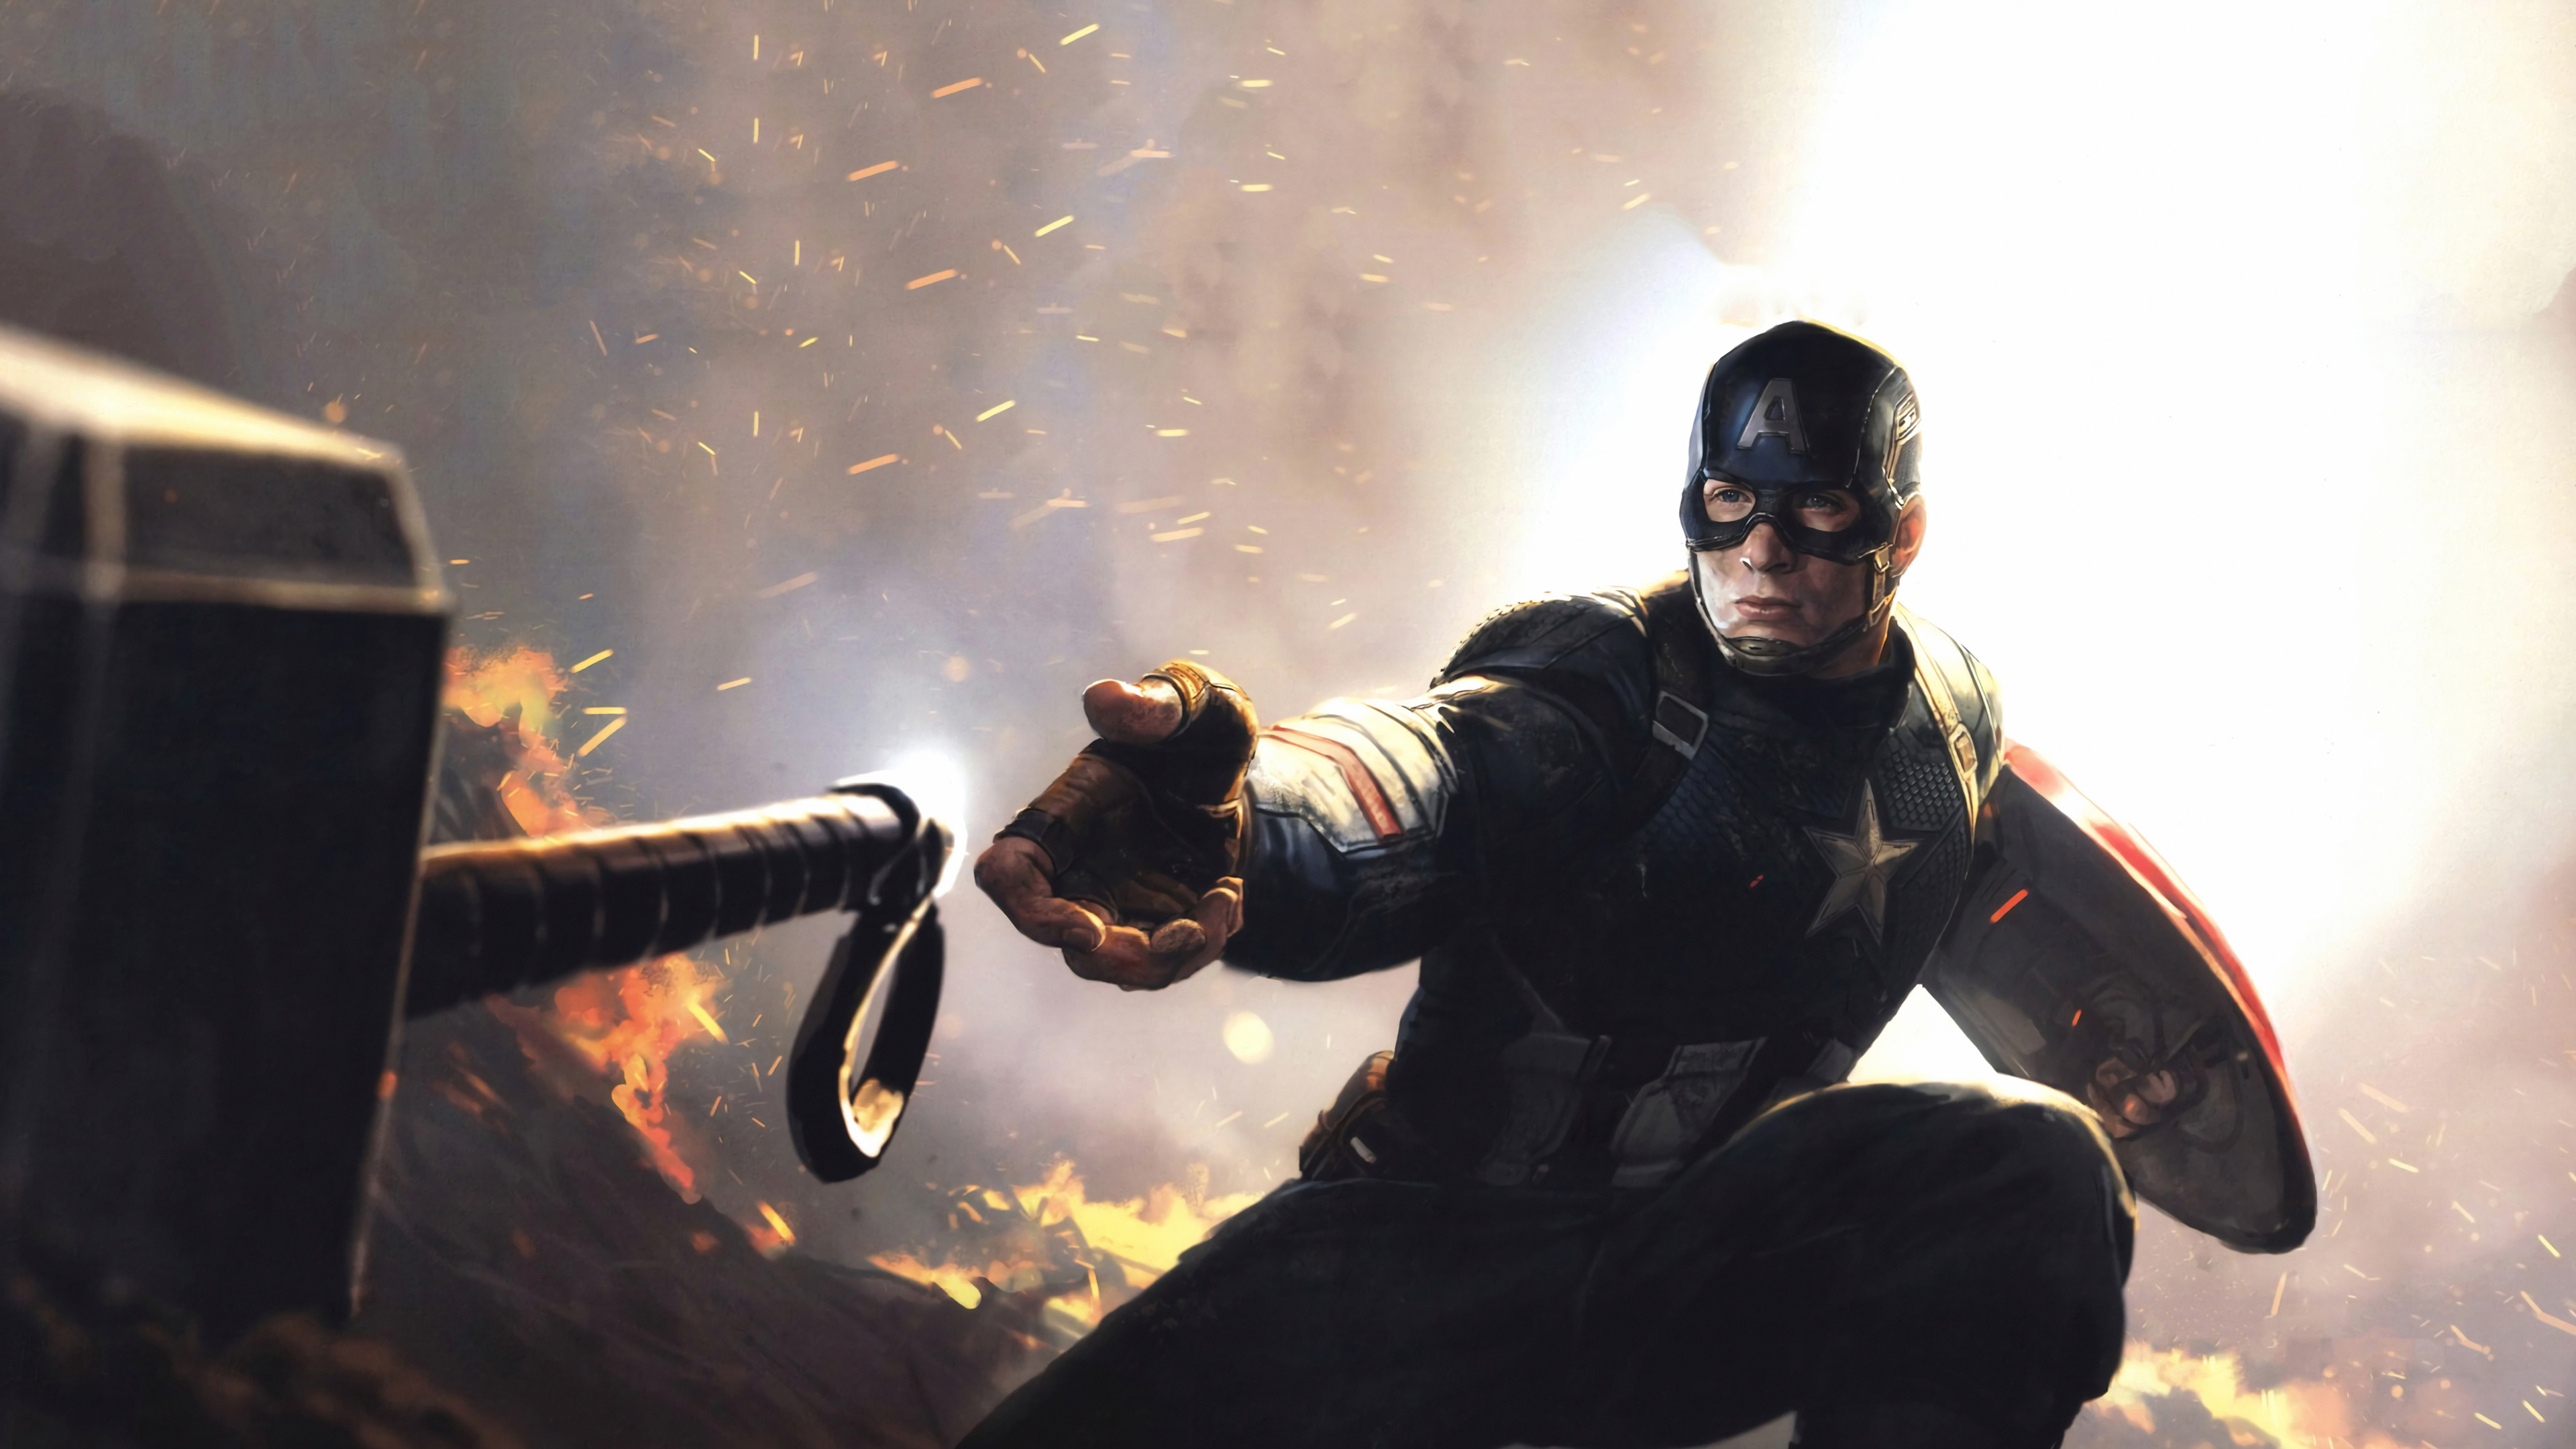 Wallpaper 4k Captain America Avengers Endgame 2019 Wallpaper